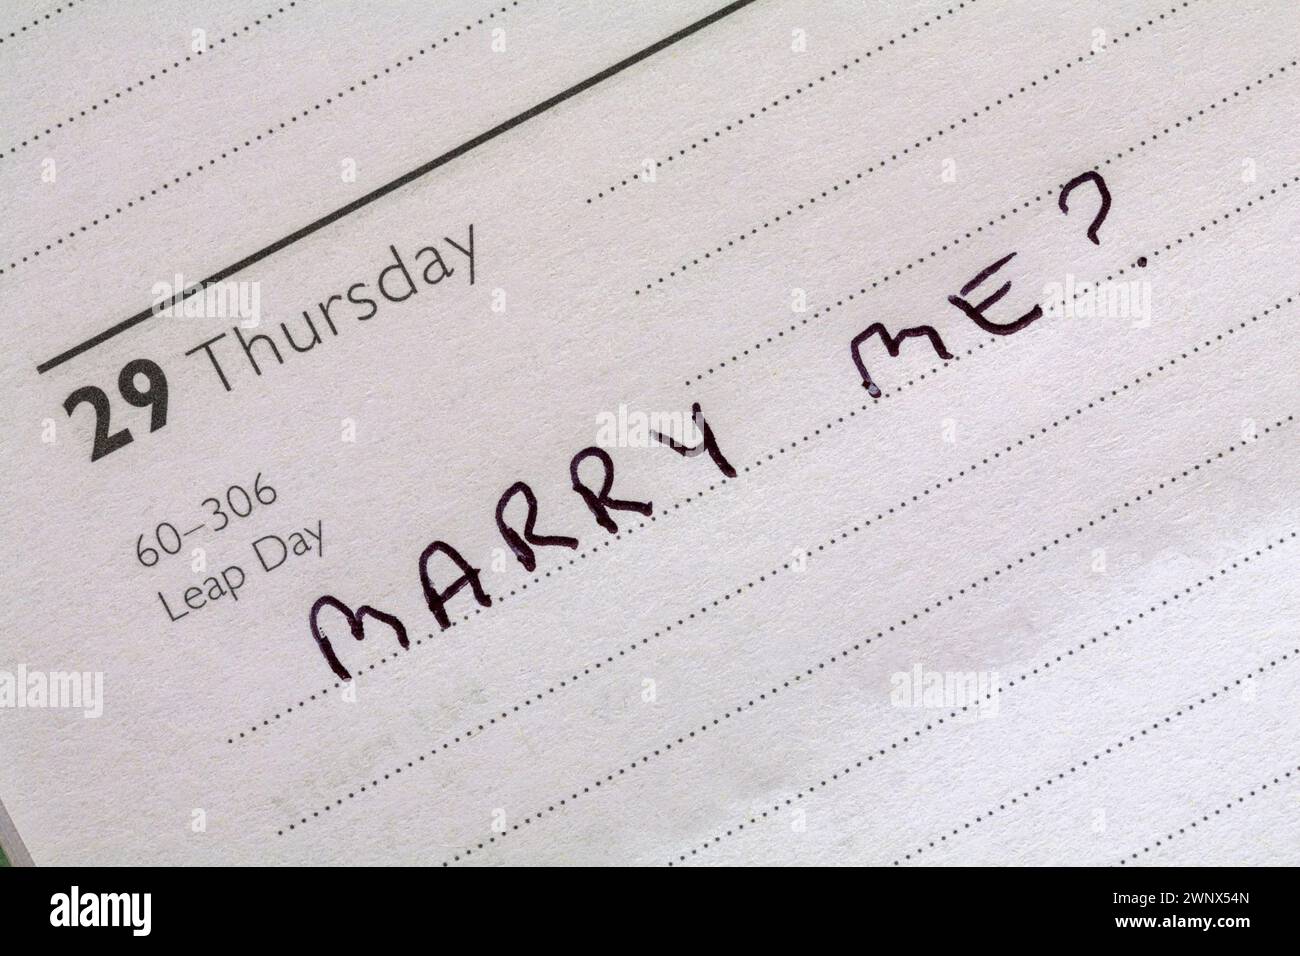 29. Februar Schaltjahr mit Nachricht heiraten? In Tagebuch geschrieben - Vorschlag für Schaltjahr Stockfoto